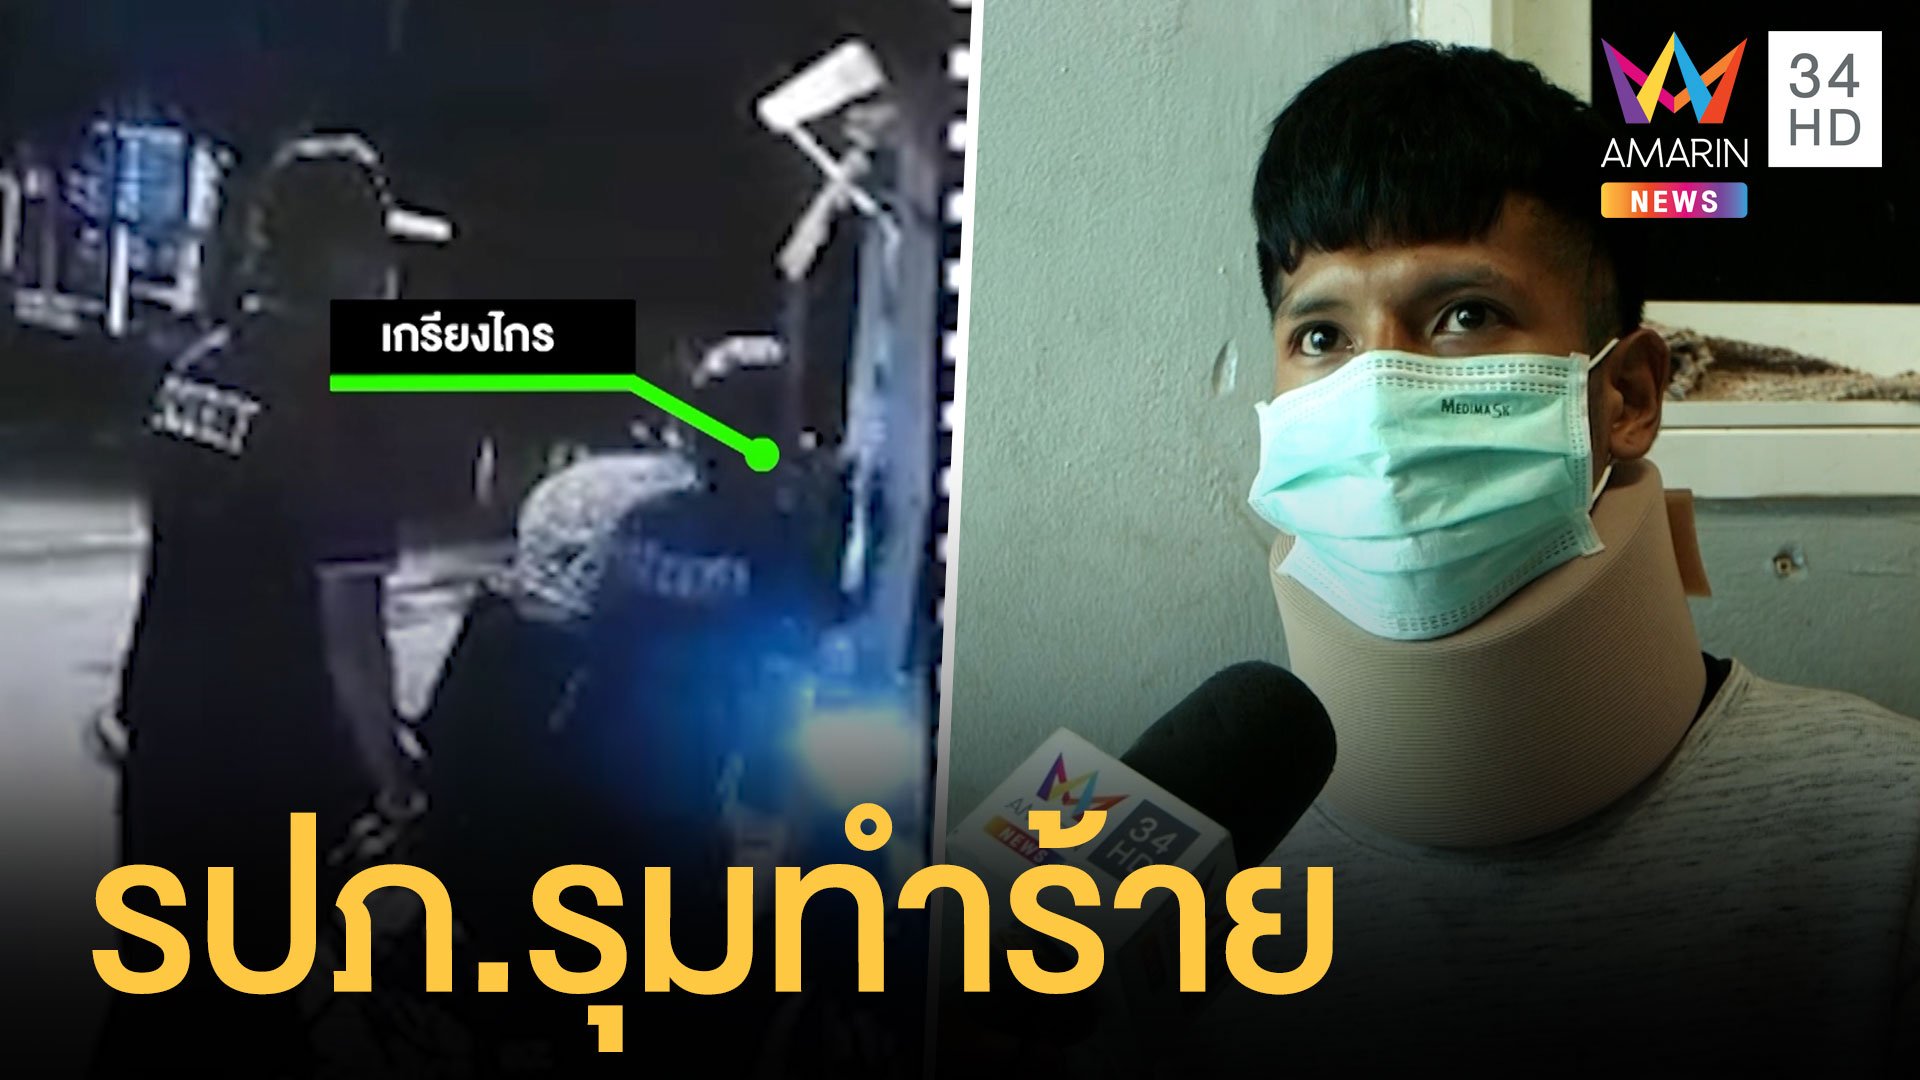 หนุ่มไรเดอร์ถูก รปภ.สถานีโทรทัศน์รุมทำร้าย  | ข่าวเที่ยงอมรินทร์ | 18 เม.ย. 64 | AMARIN TVHD34